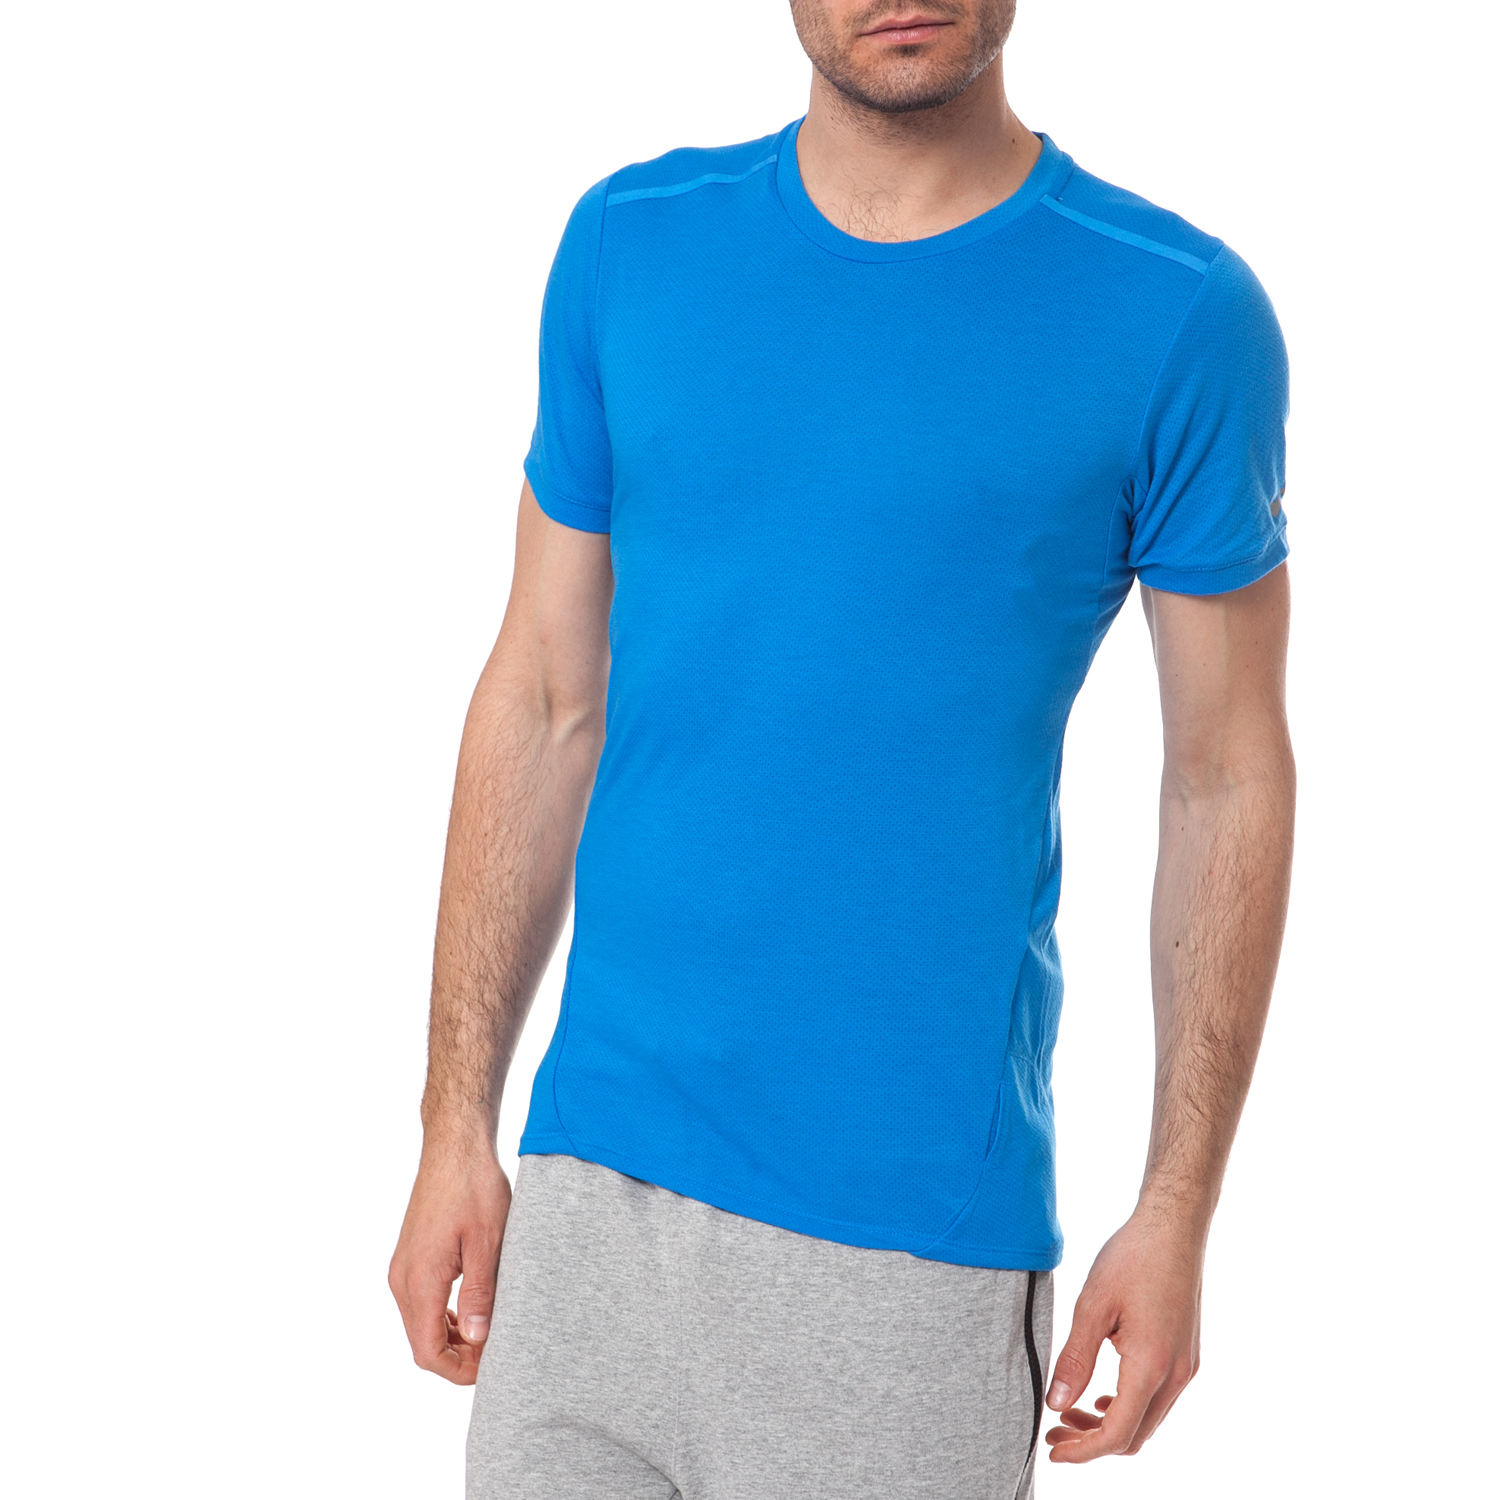 Ανδρικά/Ρούχα/Αθλητικά/T-shirt NIKE - Αντρική μπλούζα NIKE μπλε